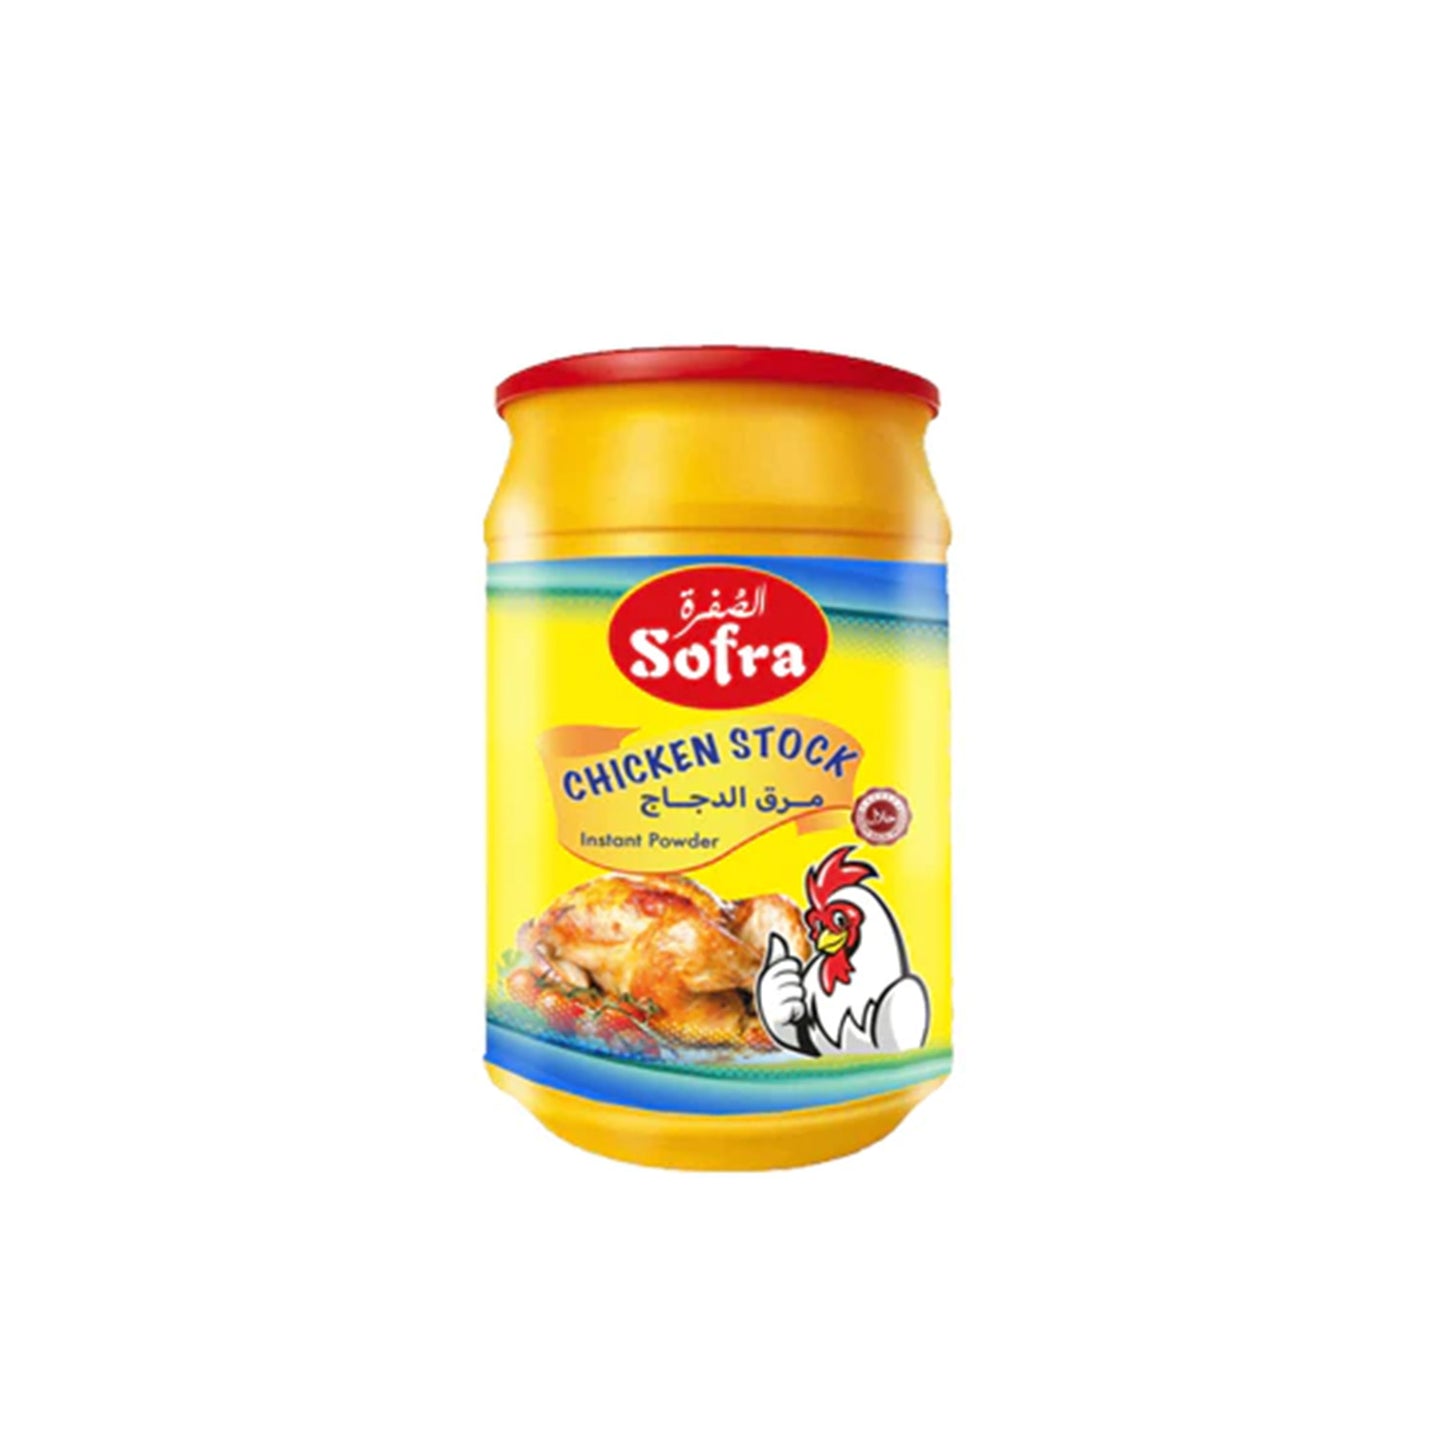 Offer Sofra Chicken Stock 1Kg X 2 pcs